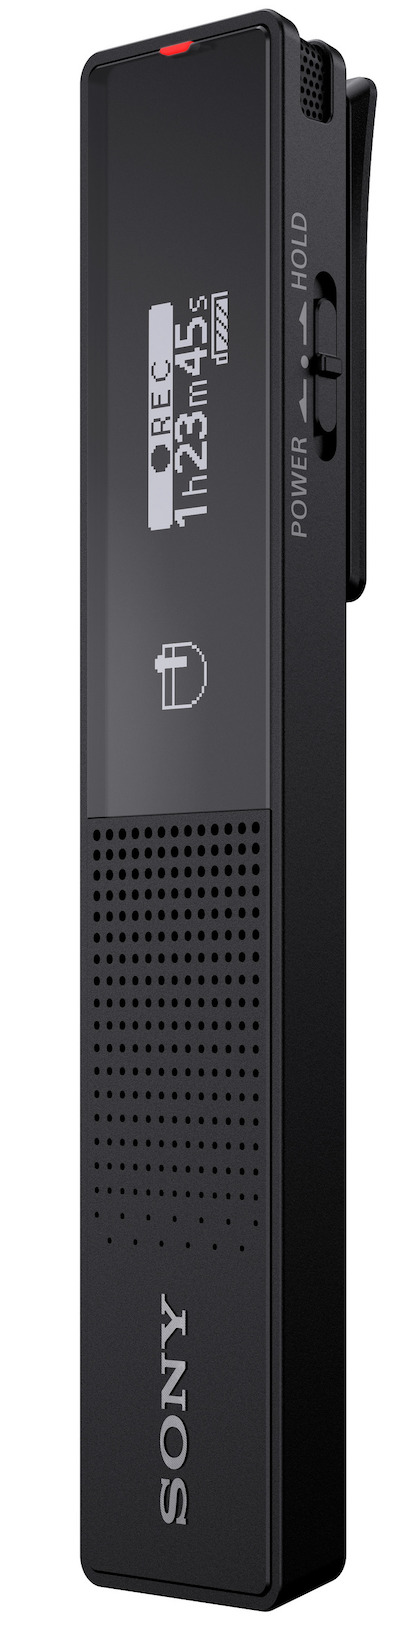 Sony выпустила ультратонкий диктофон ICD-TX660